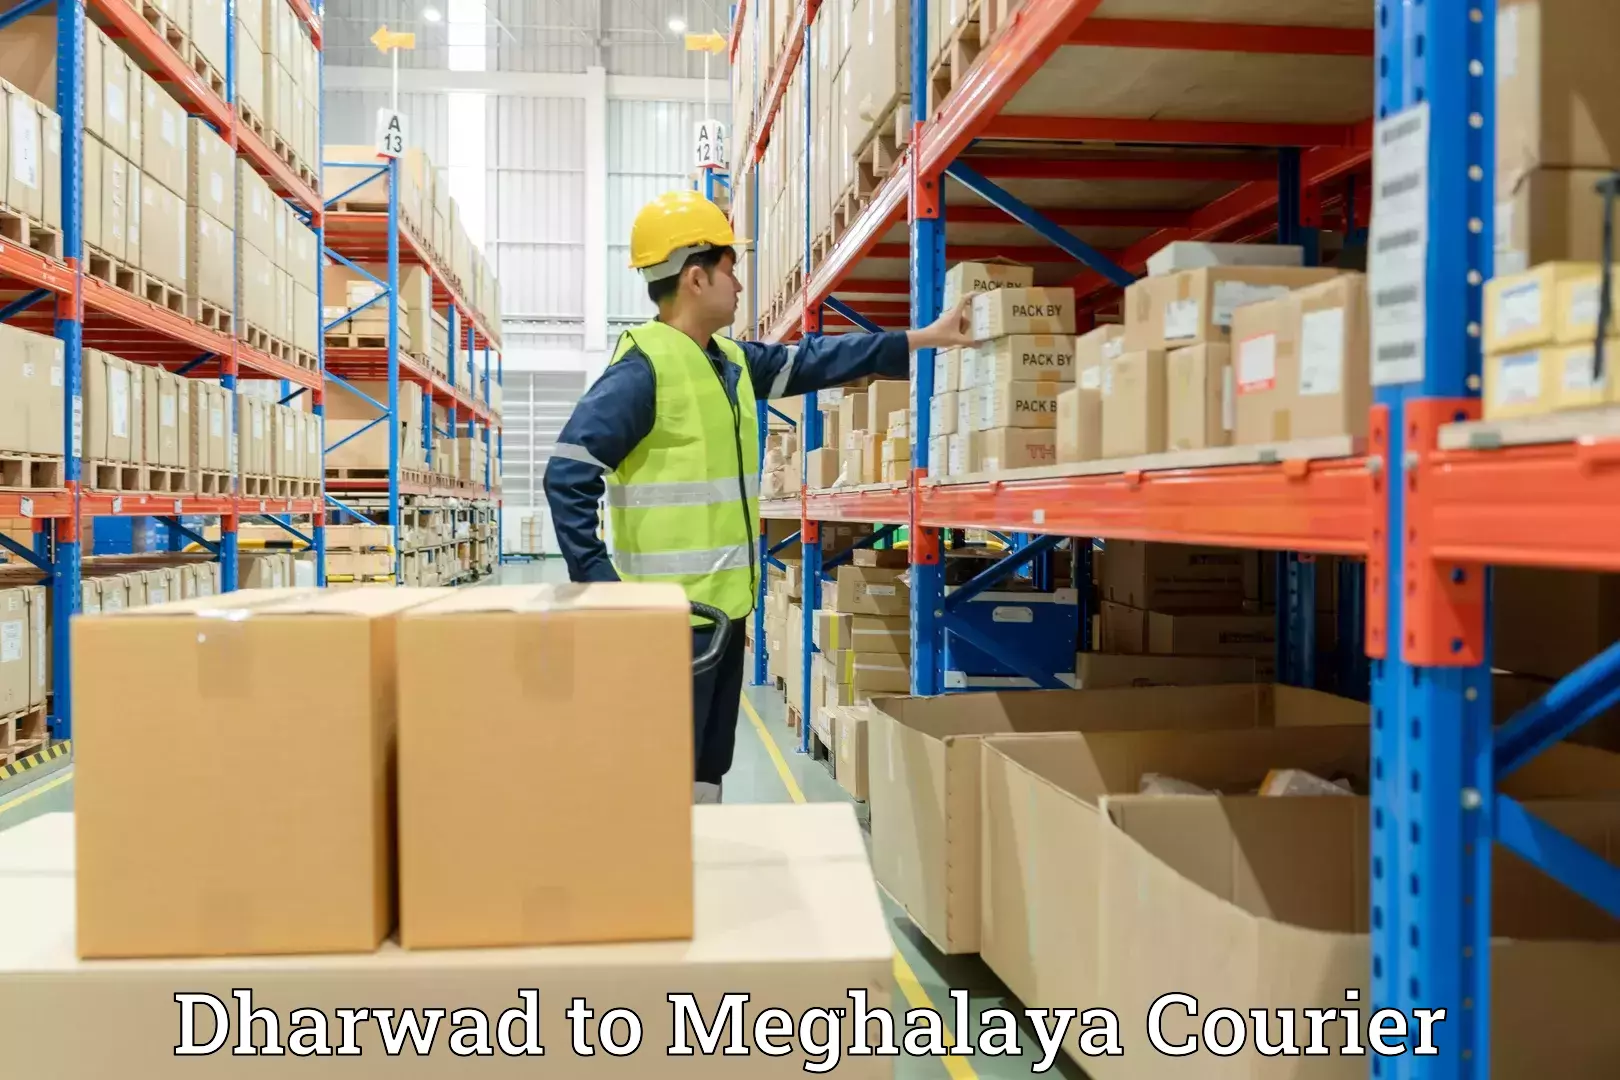 Furniture transport experts Dharwad to Meghalaya